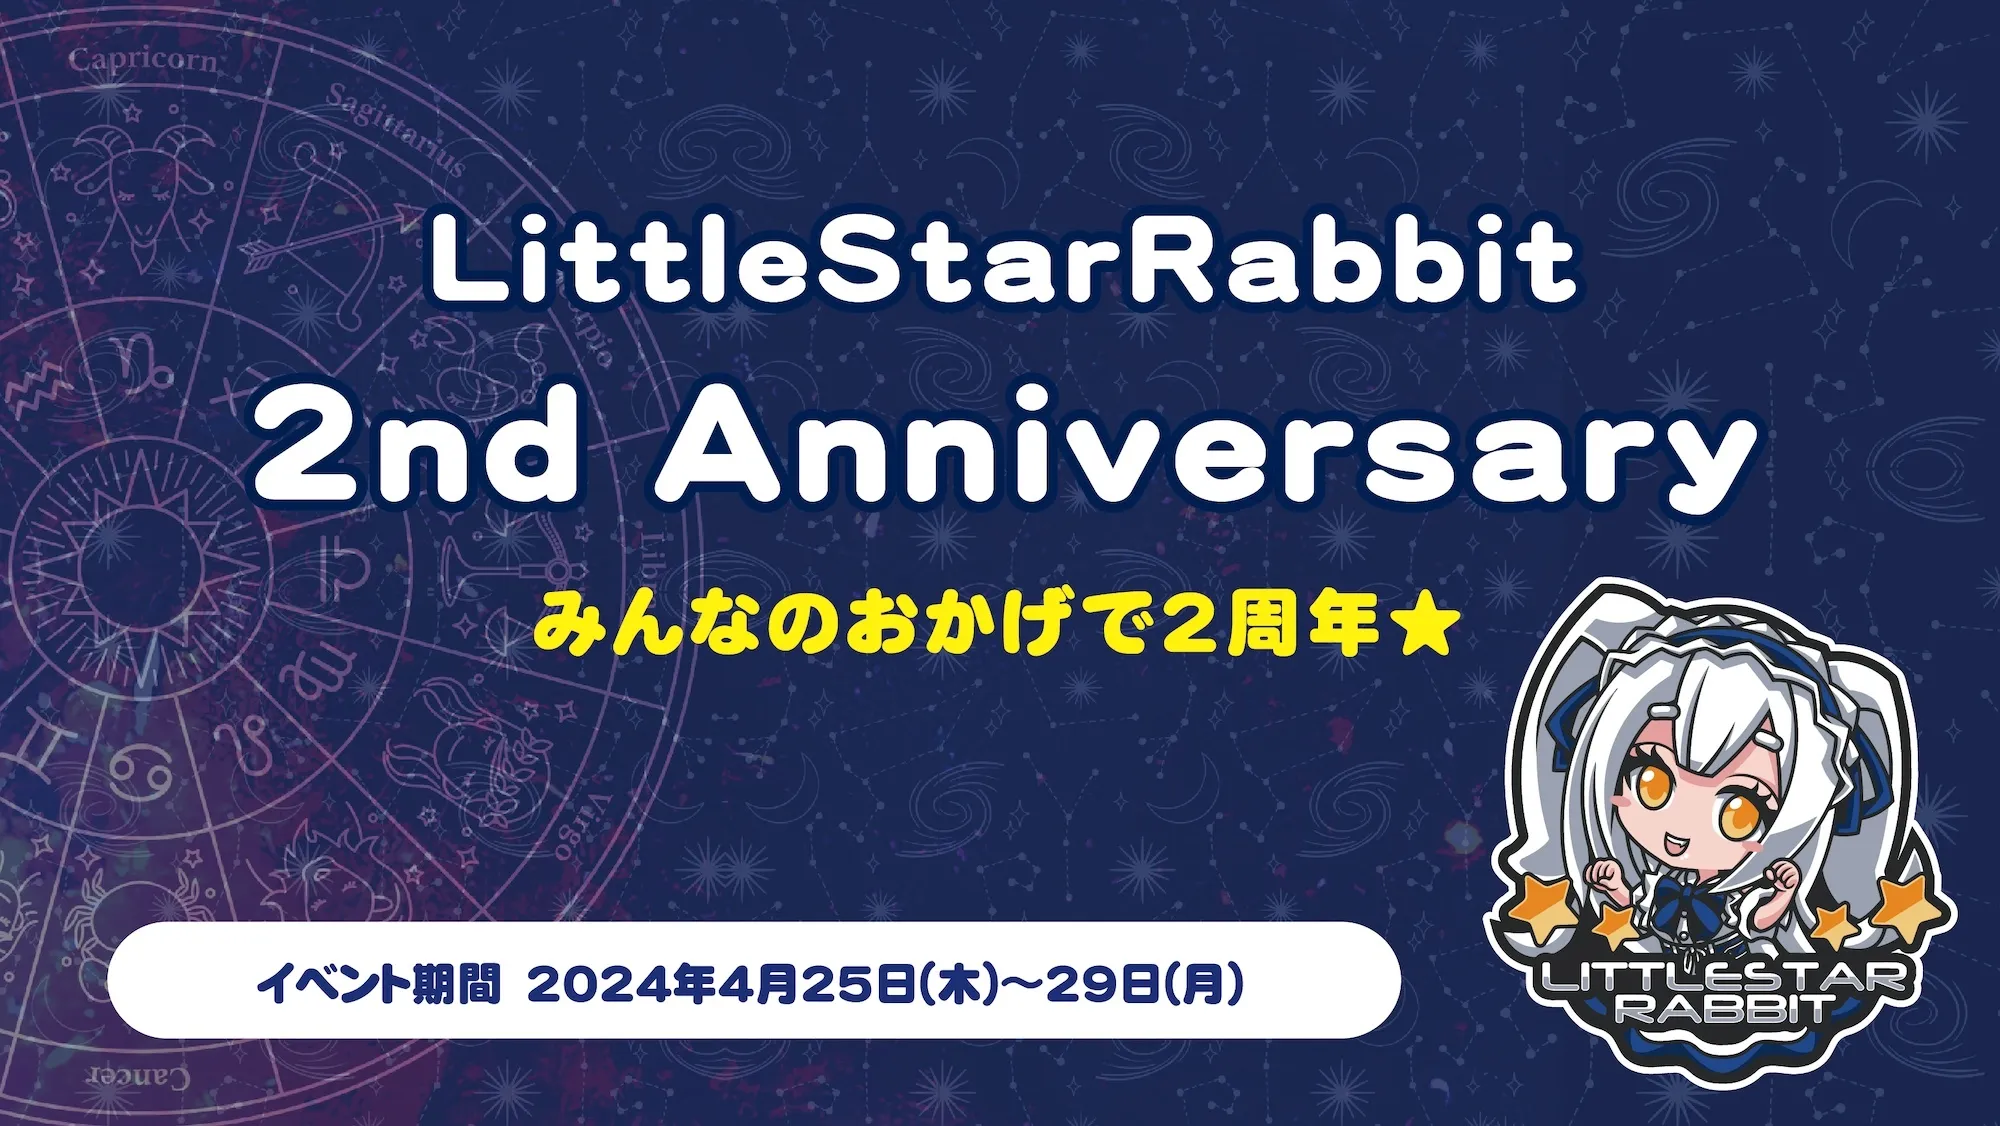 LittleStarRabbit 2nd Anniversary  　- みんなのおかげで2周年★ - リトルスターラビット